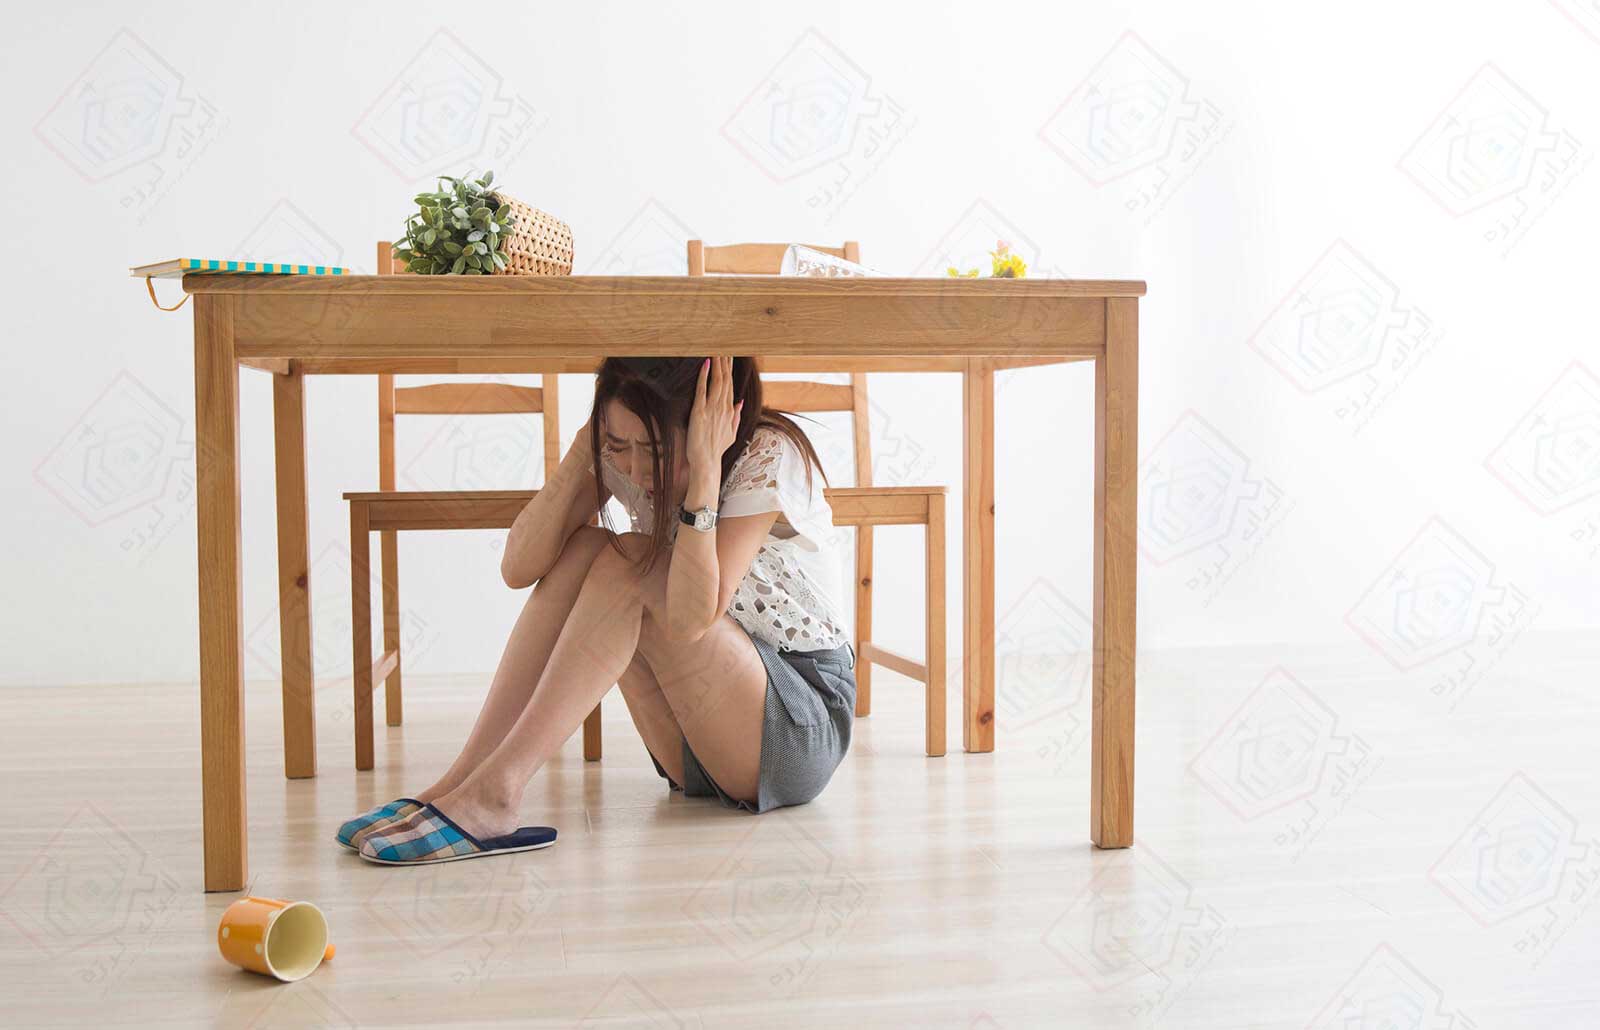 در هنگام زلزله زیر یک میز مقاوم پناه بگیرید